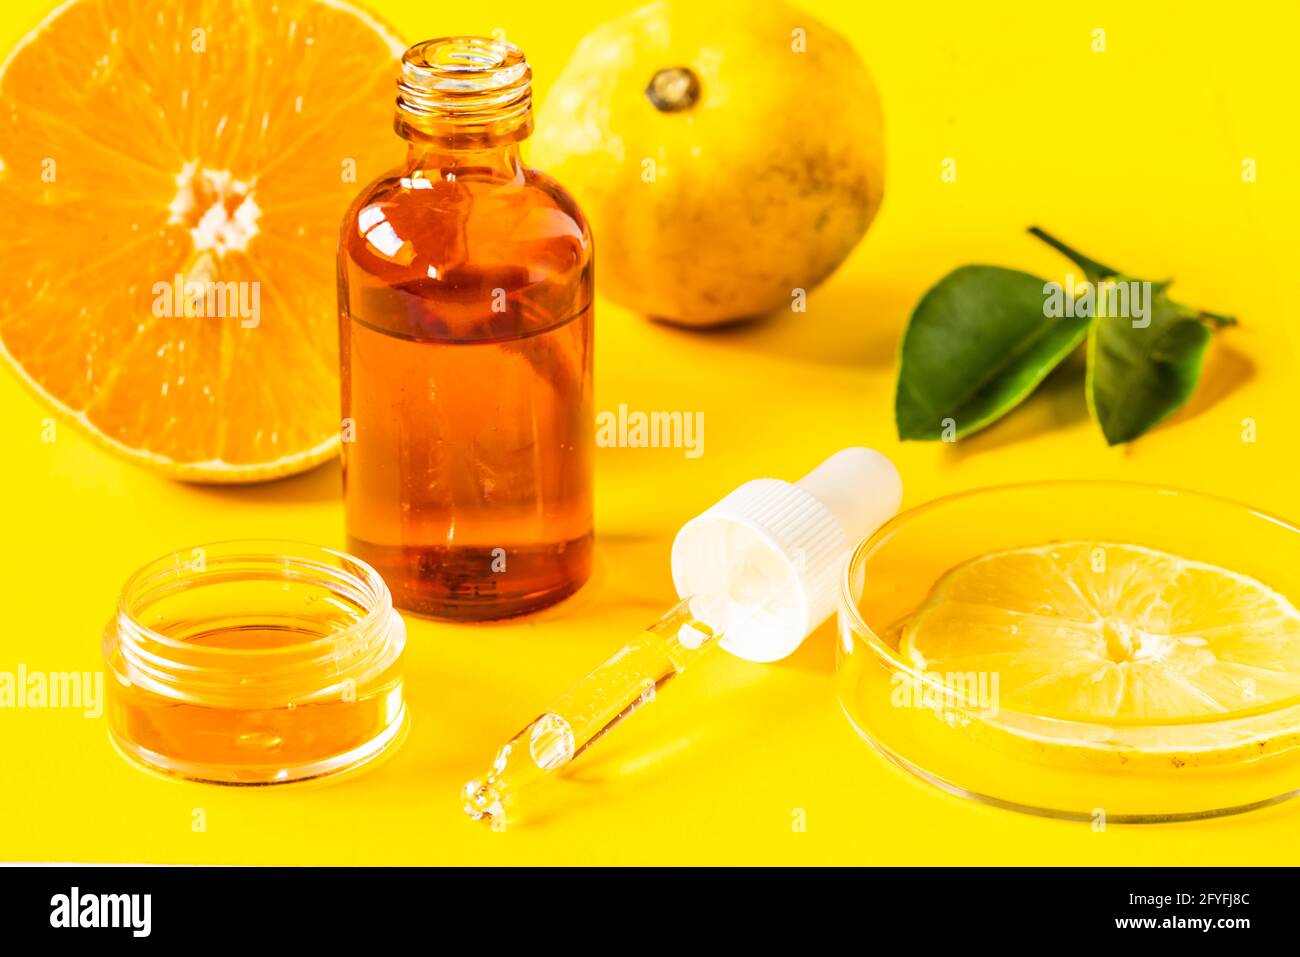 Illustrazione sull'uso della vitamina C nella fabbricazione dei cosmetici. Foto Stock